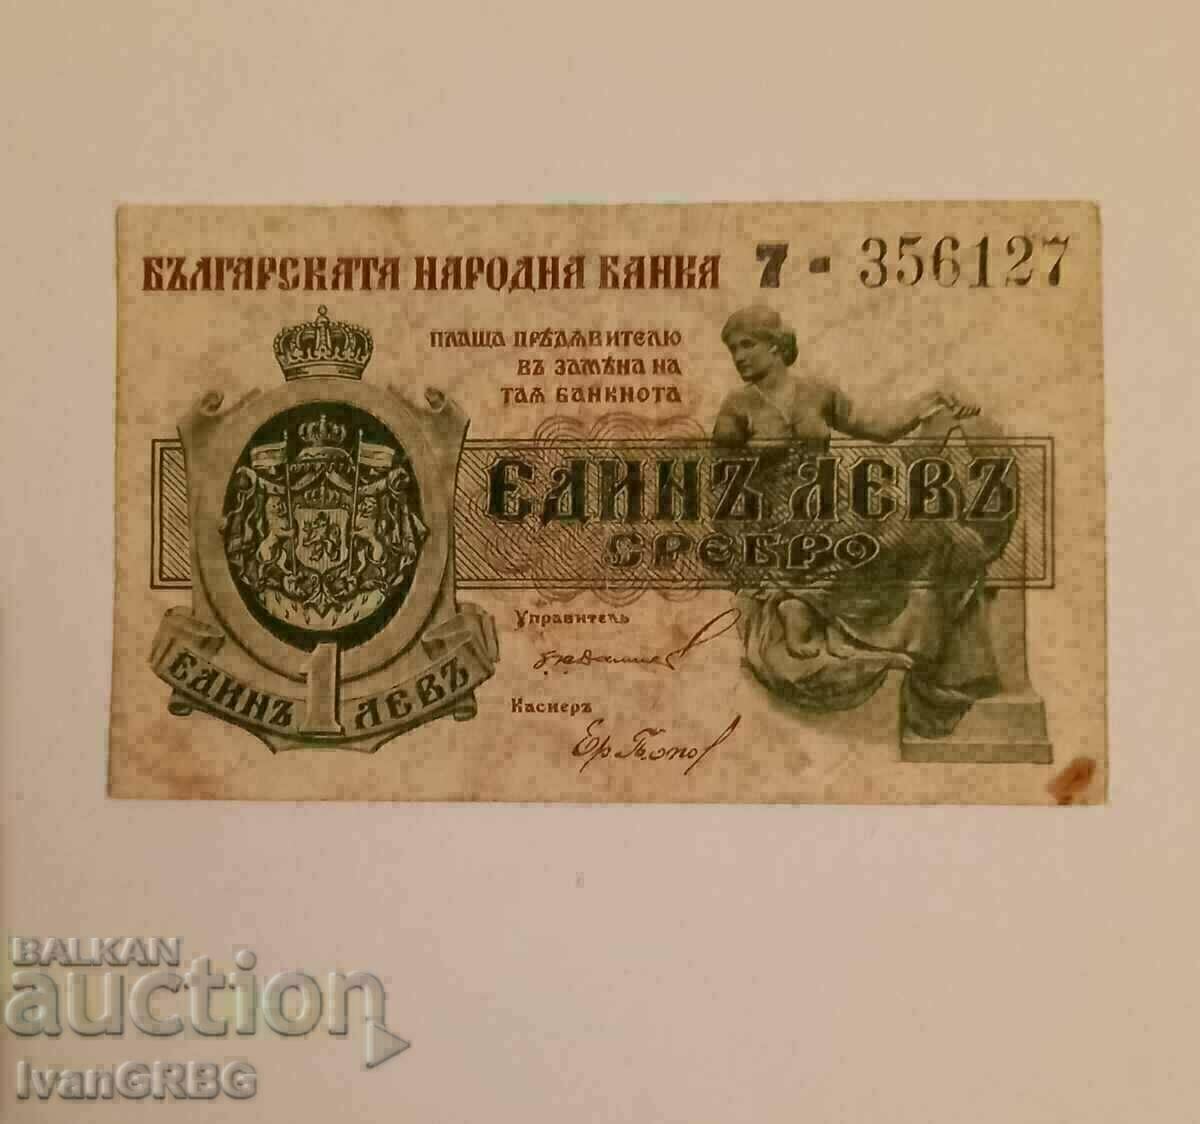 1 silver lev 1920 Kingdom of Bulgaria 7 ONE DIGIT